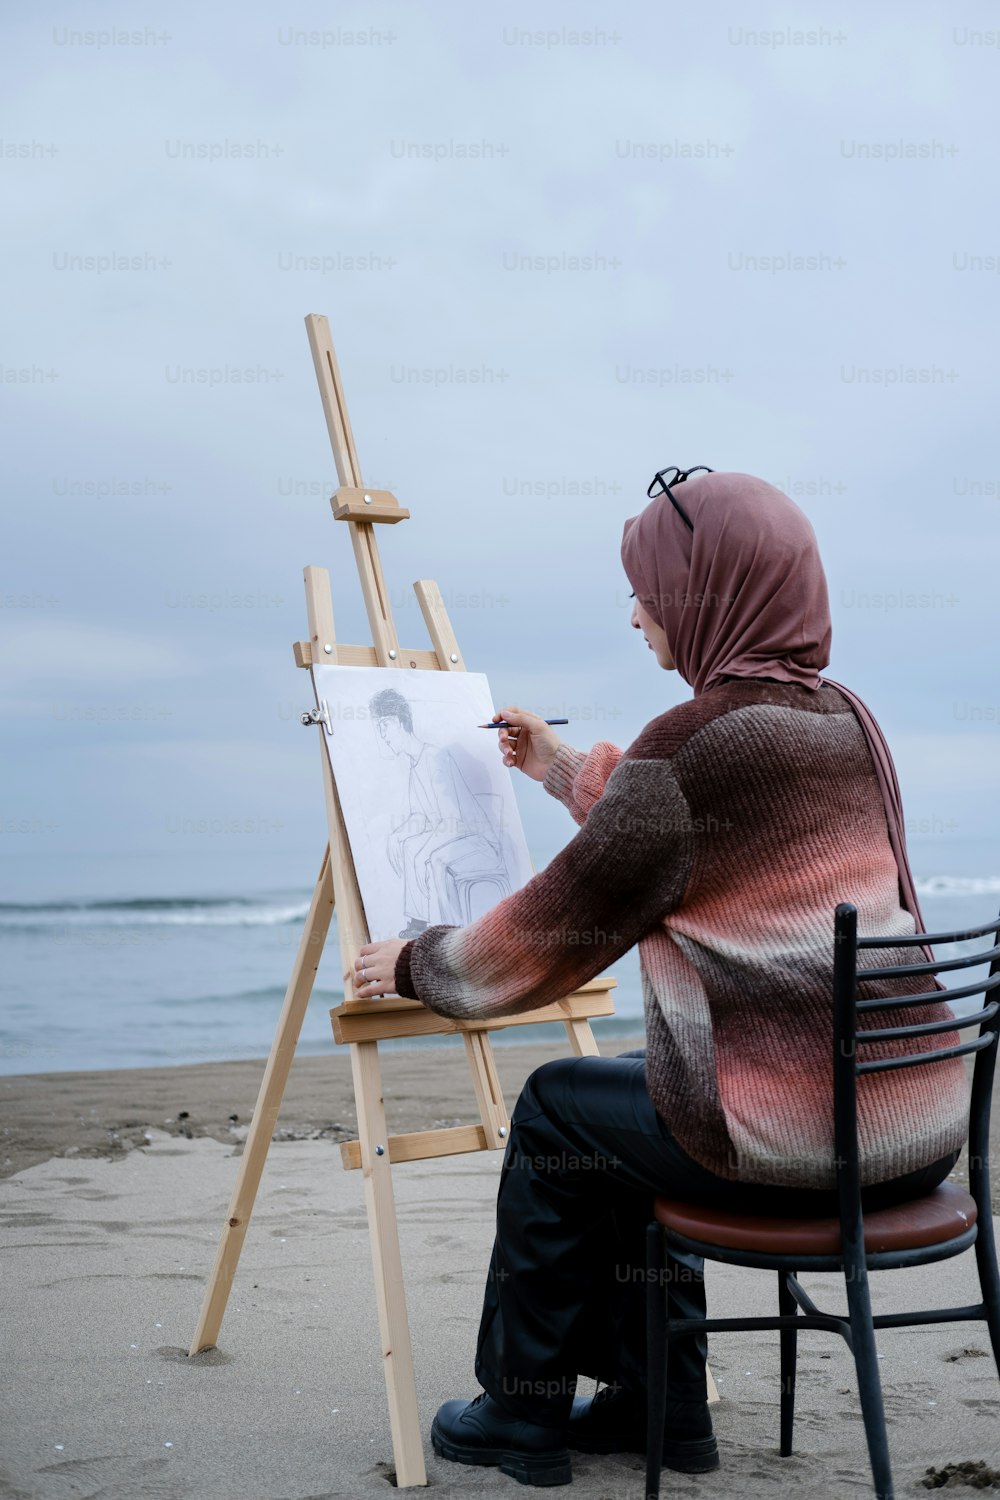 Una persona sentada en una silla dibujando en un lienzo